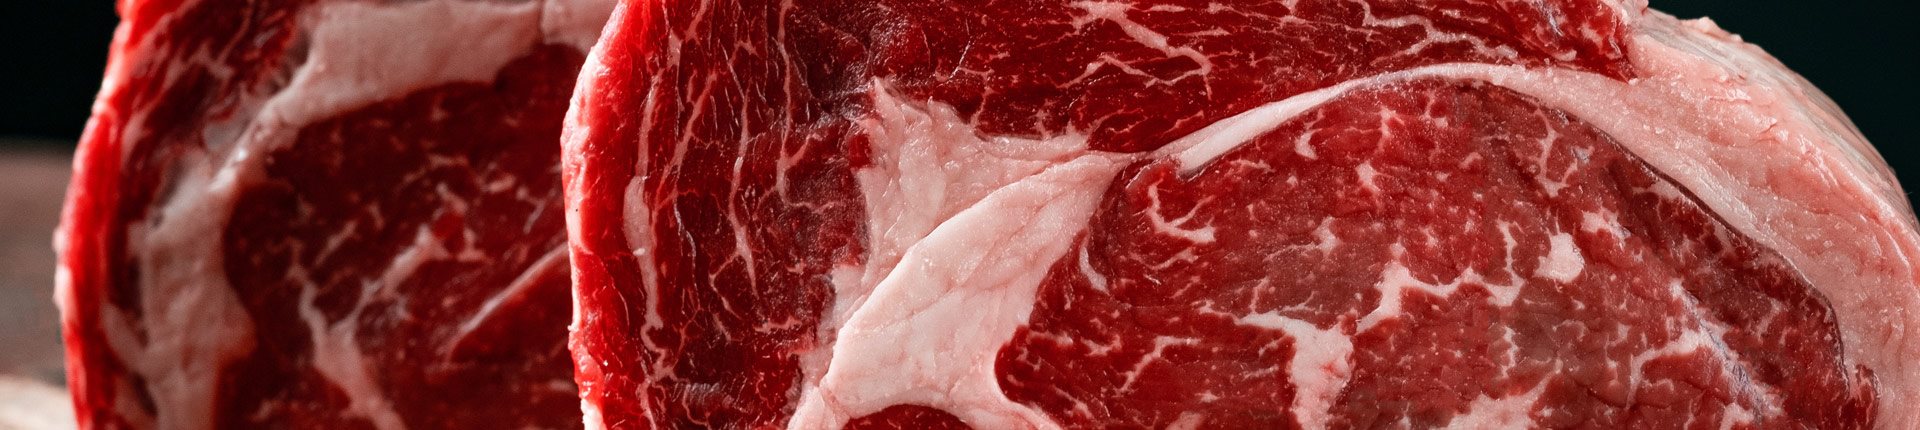 Czy mięso jest szkodliwe i zwiększa ryzyko zachorowania na raka?